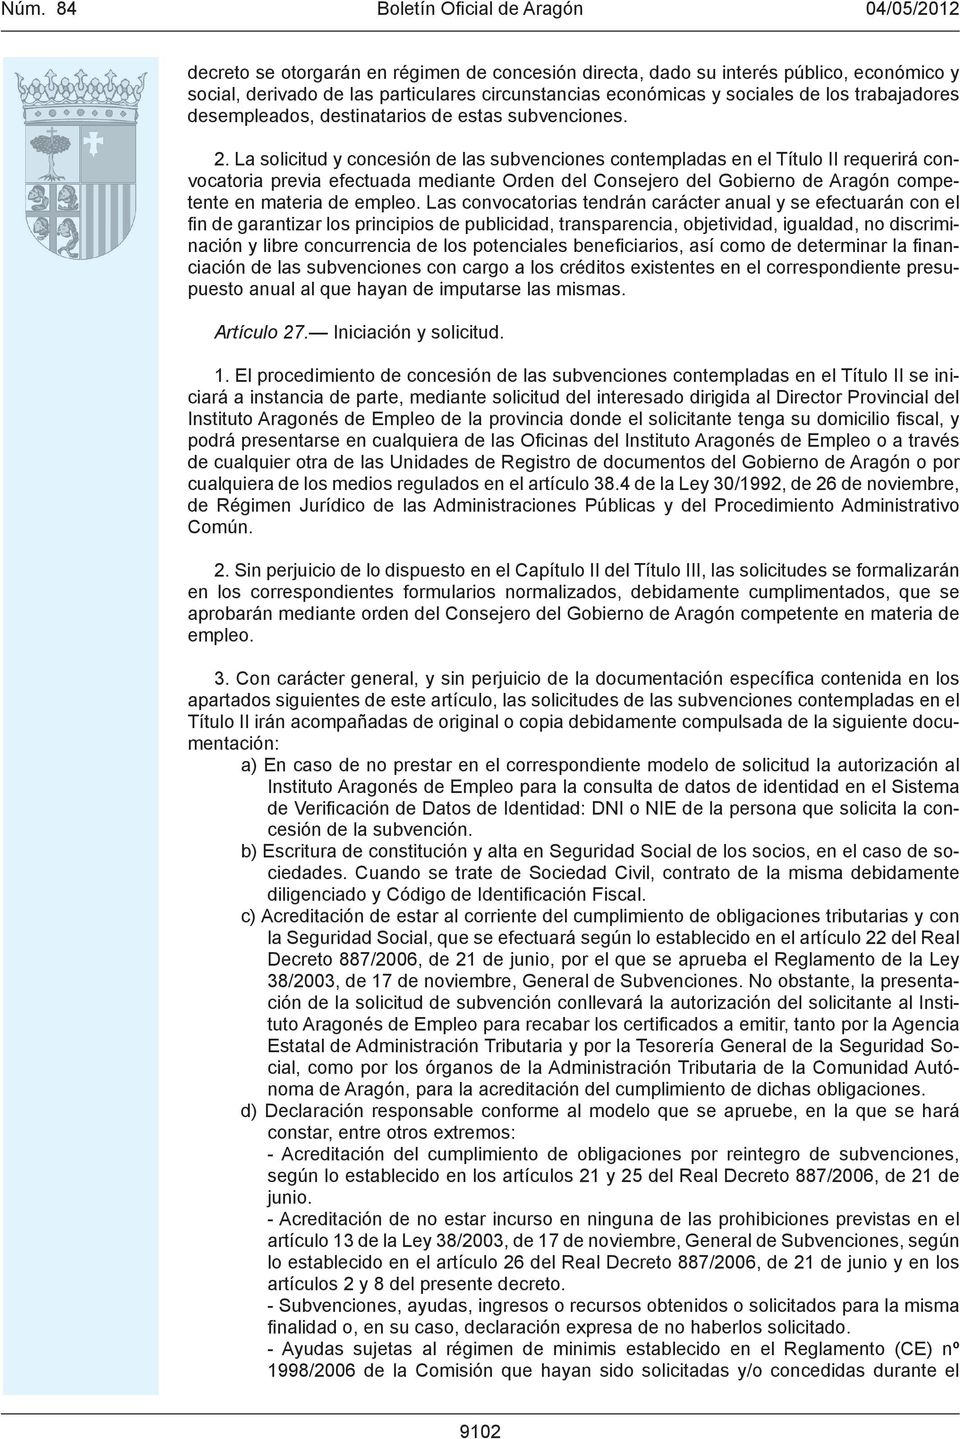 La solicitud y concesión de las subvenciones contempladas en el Título II requerirá convocatoria previa efectuada mediante Orden del Consejero del Gobierno de Aragón competente en materia de empleo.